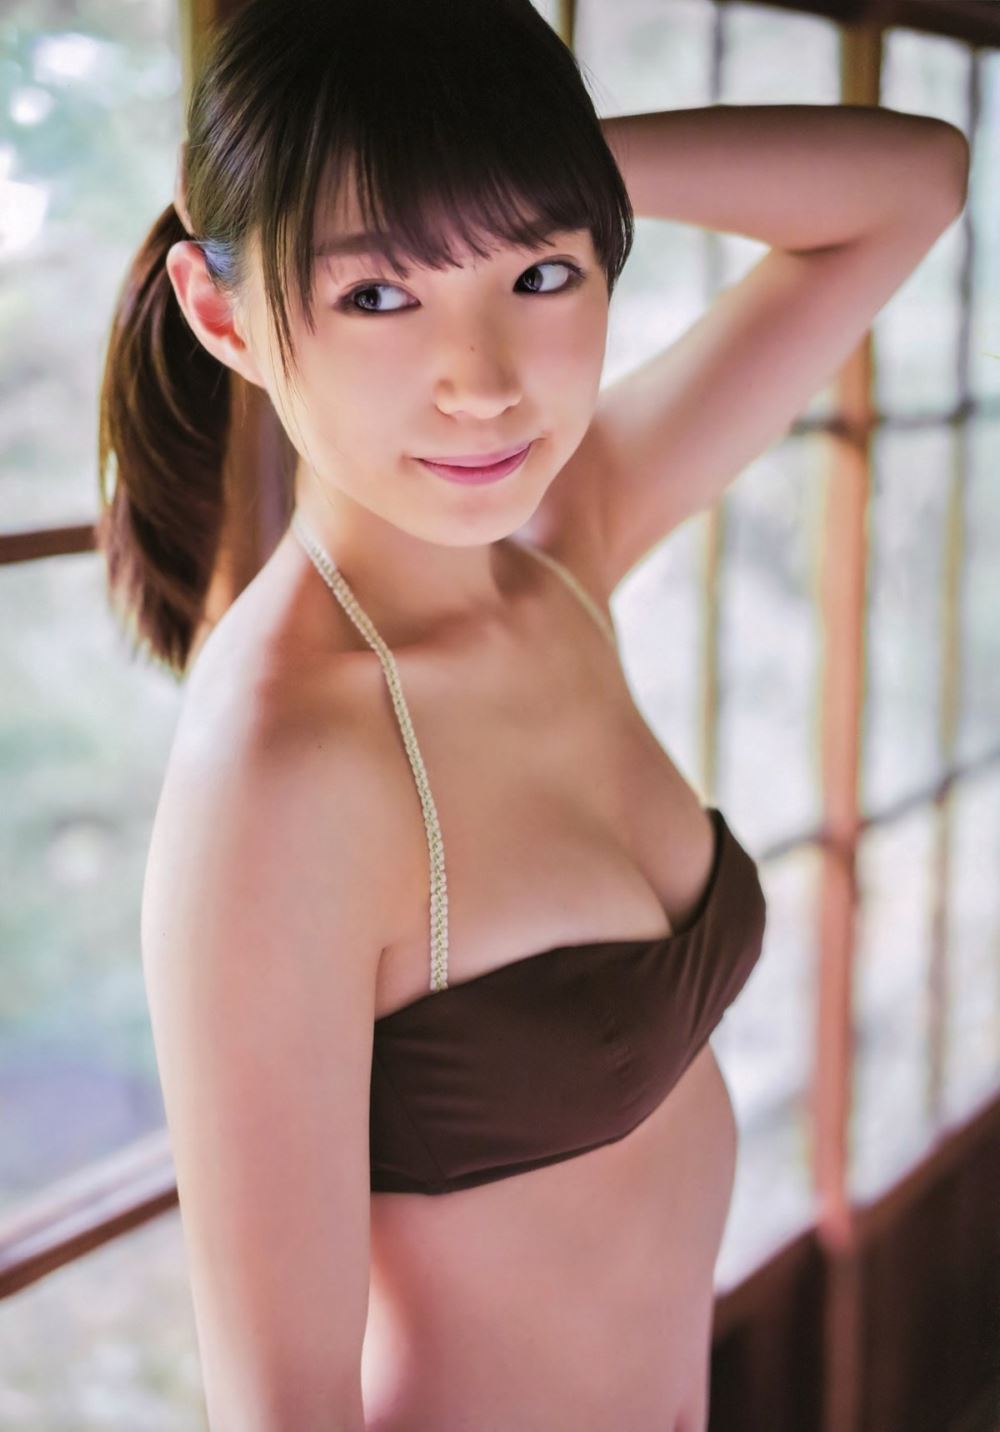 太田夢莉 1万年に1人 可愛い アイドル 水着 画像 29